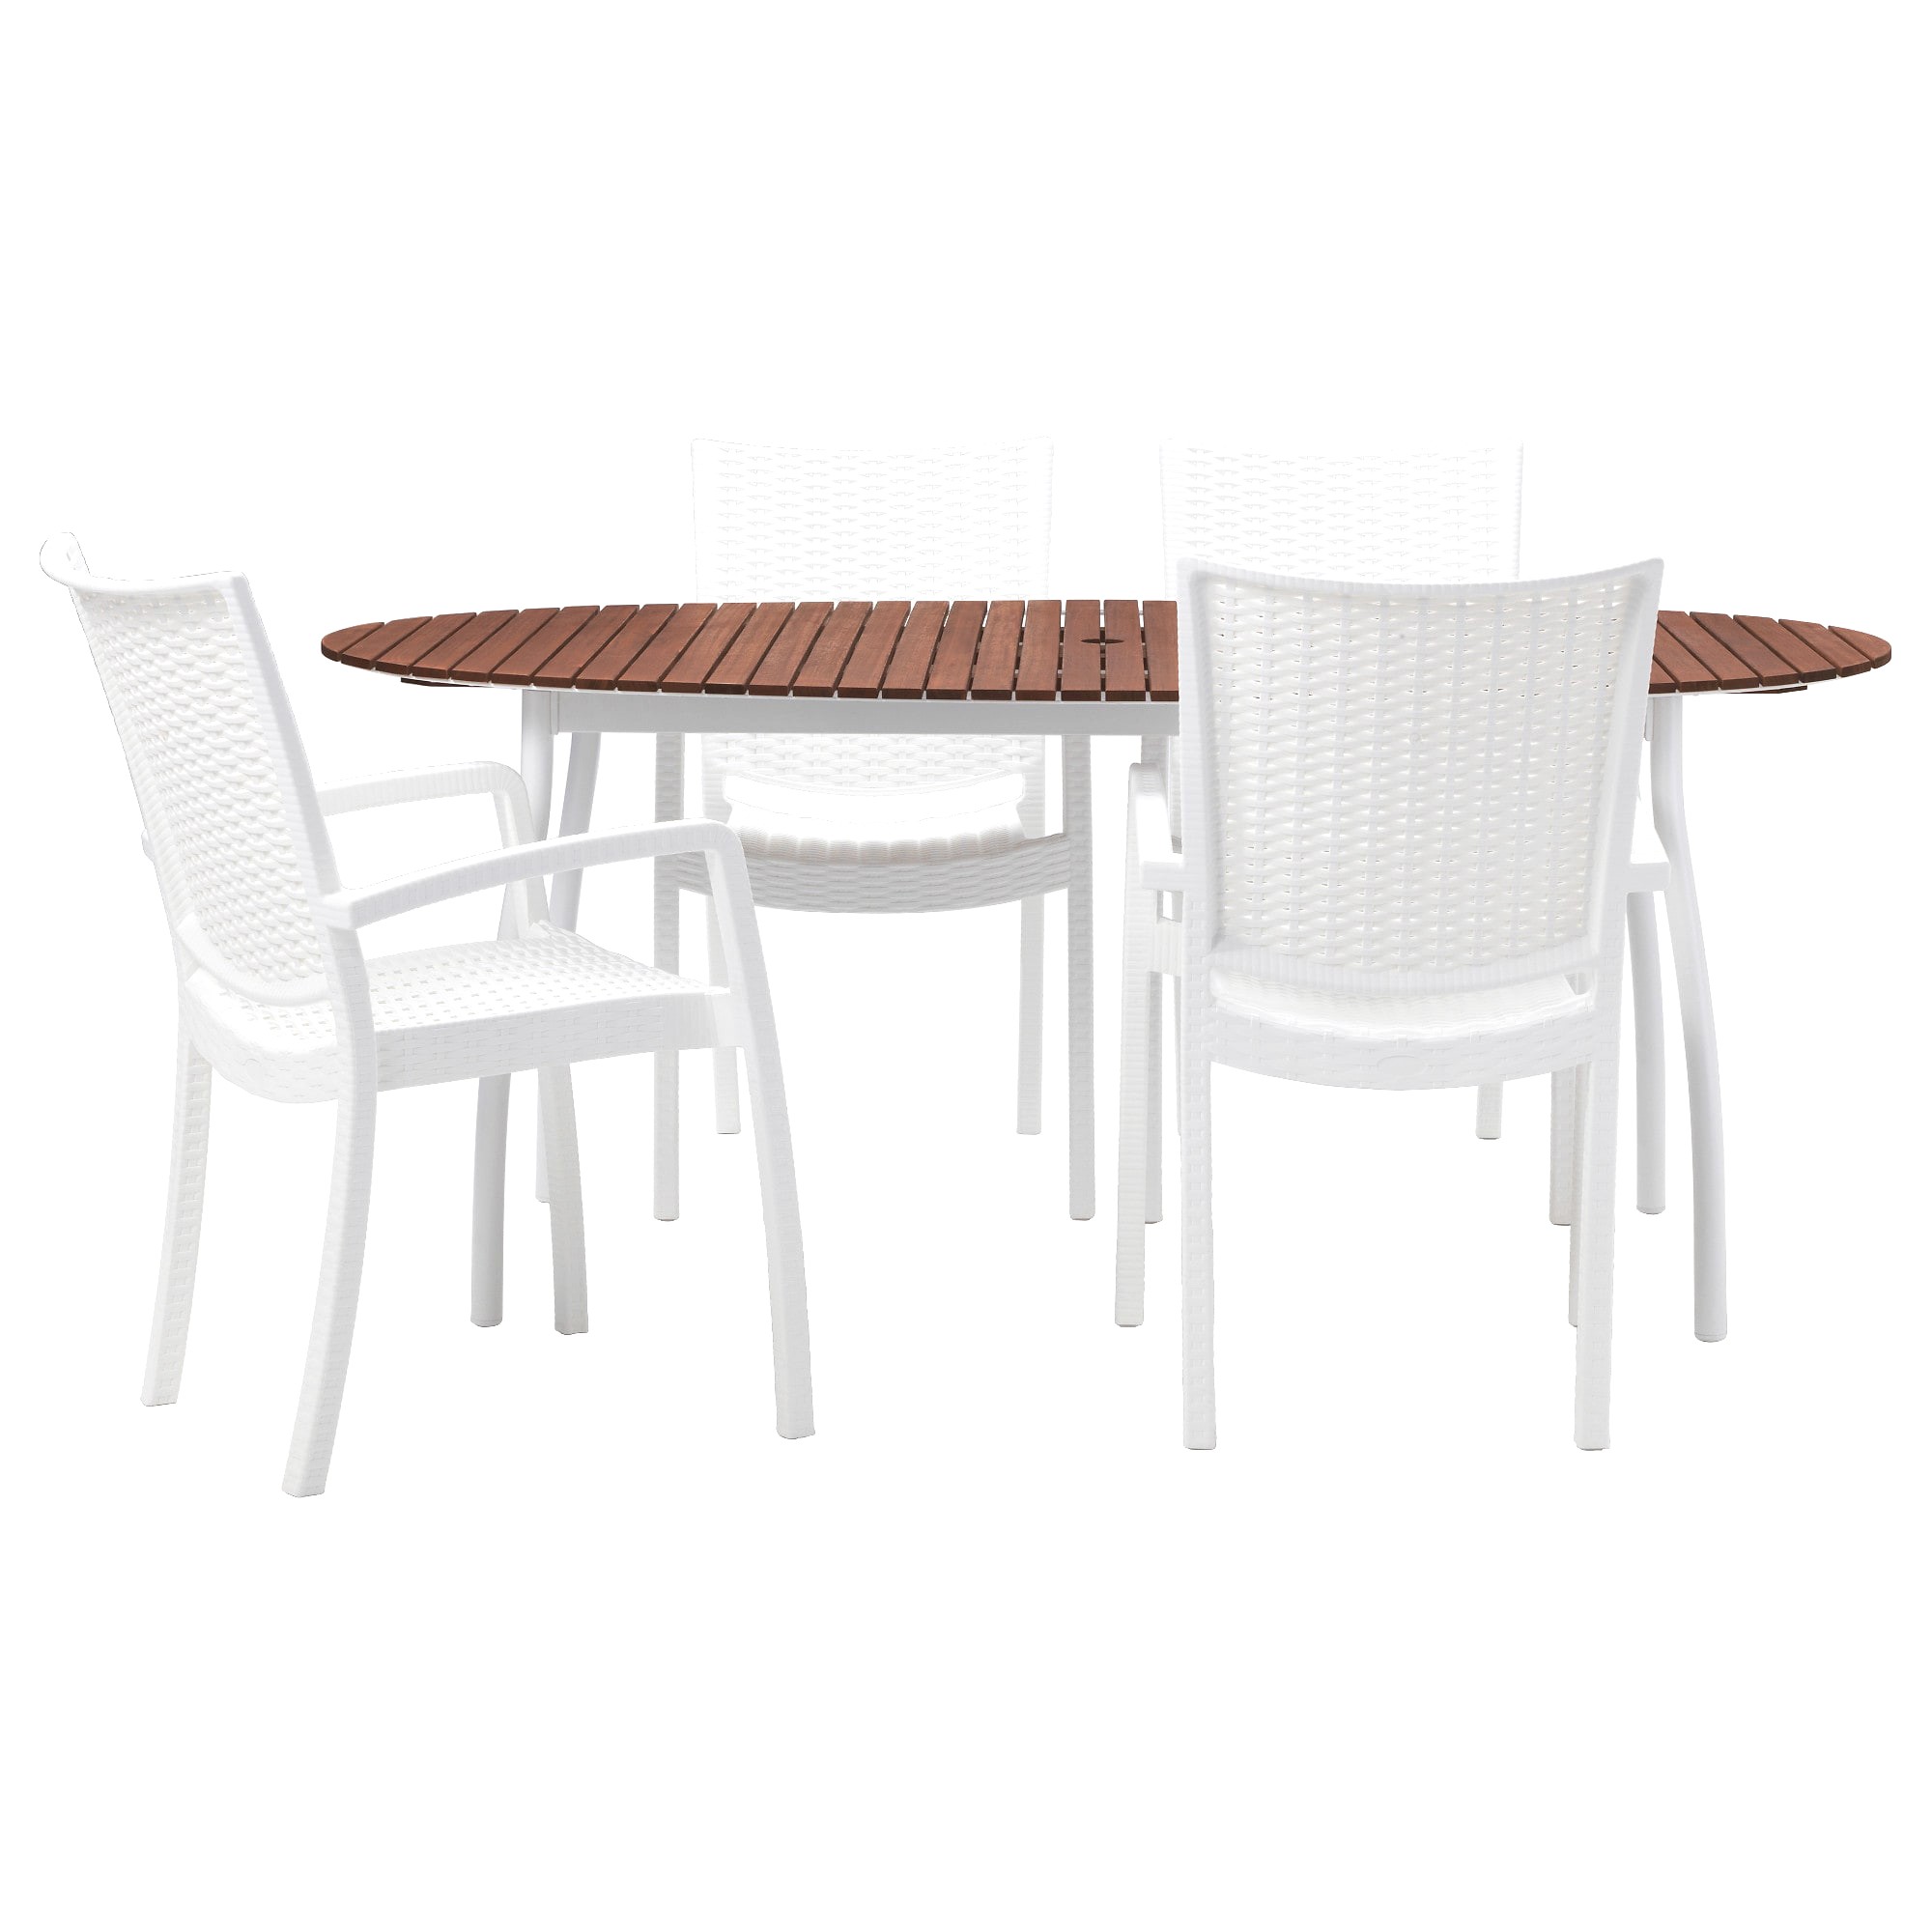 table chaise de jardin ikea avec innamo vindals c3 b6 table4 chaises accoud ext c3 a9rieur blanc teint c3 a9 brun pe s5 et table bistrot ikea 1 2000x2000px table bistrot ikea